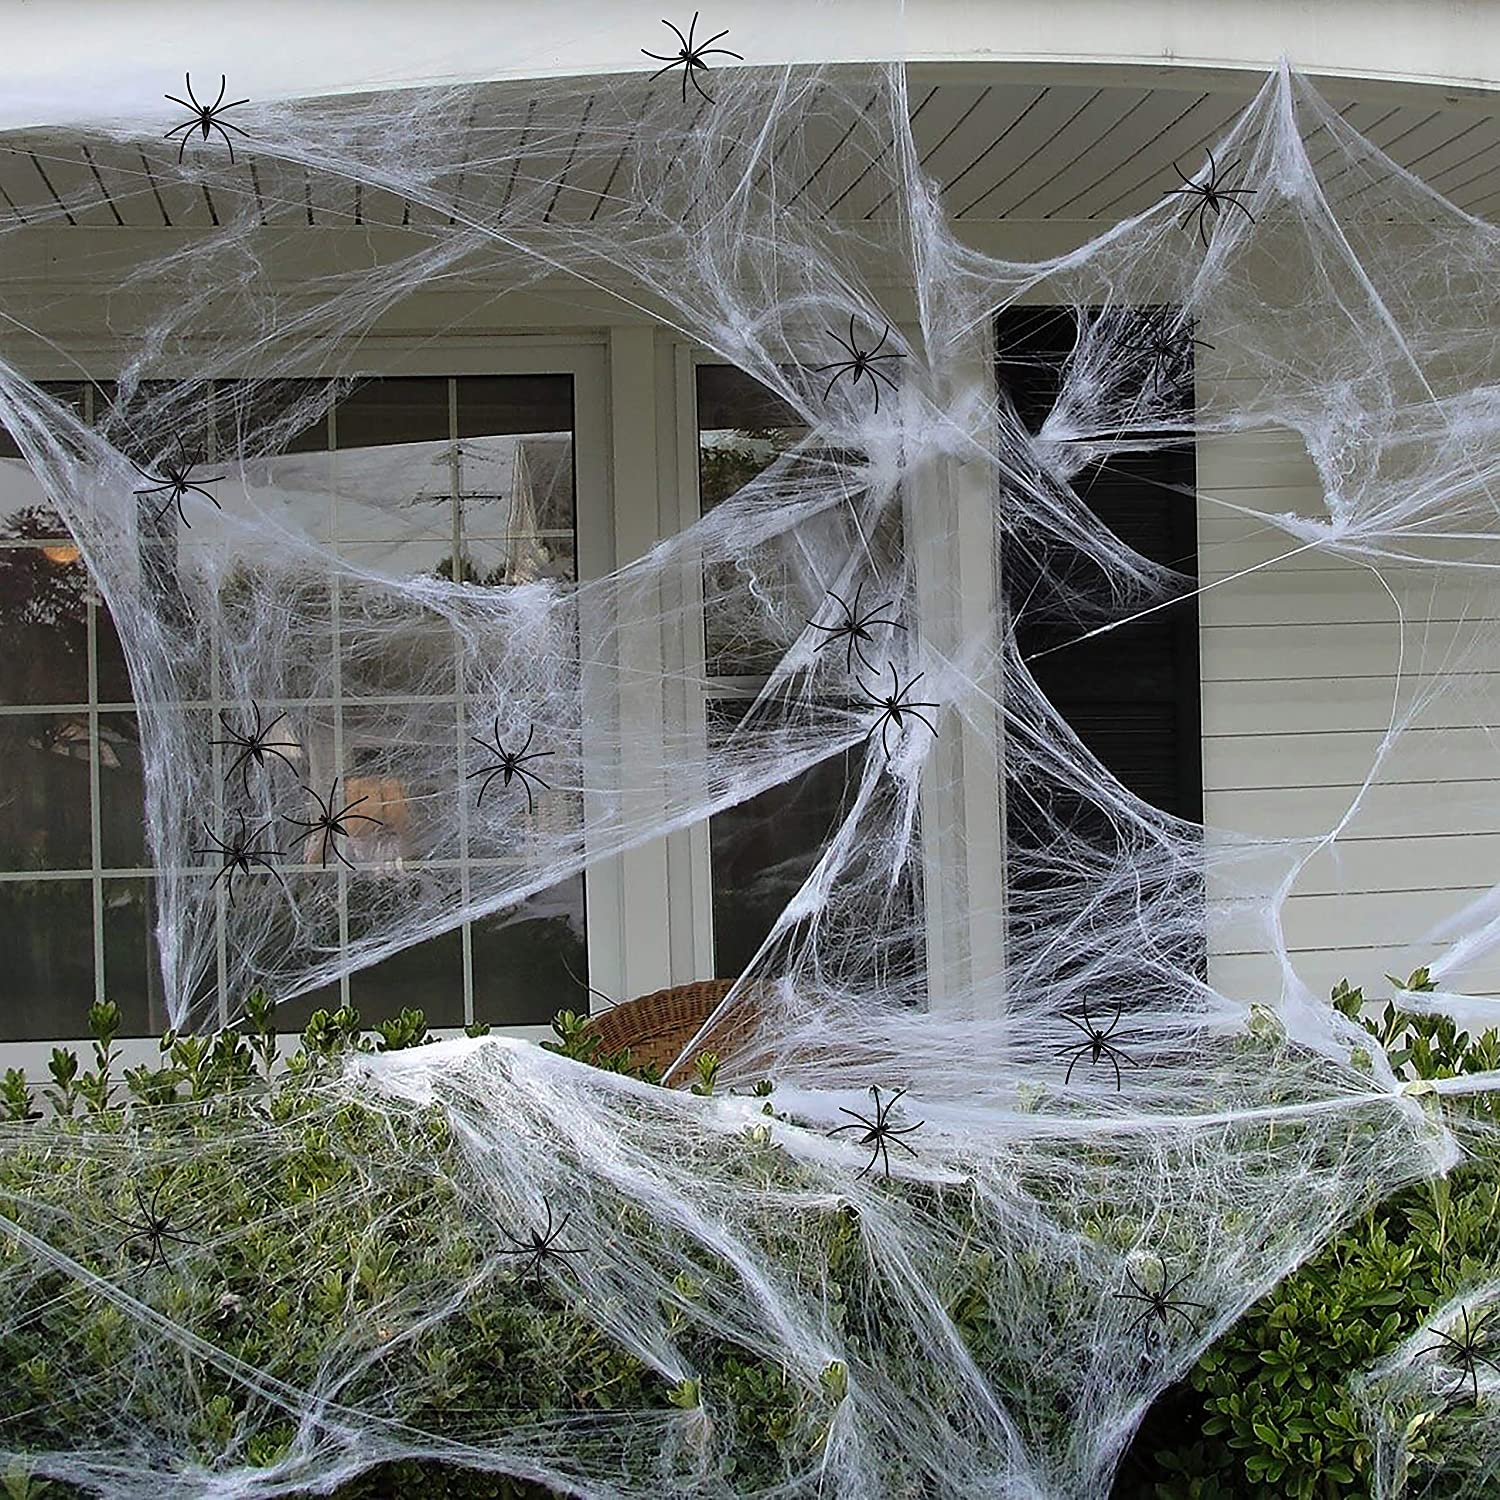 Ways to decorate your door for Halloween